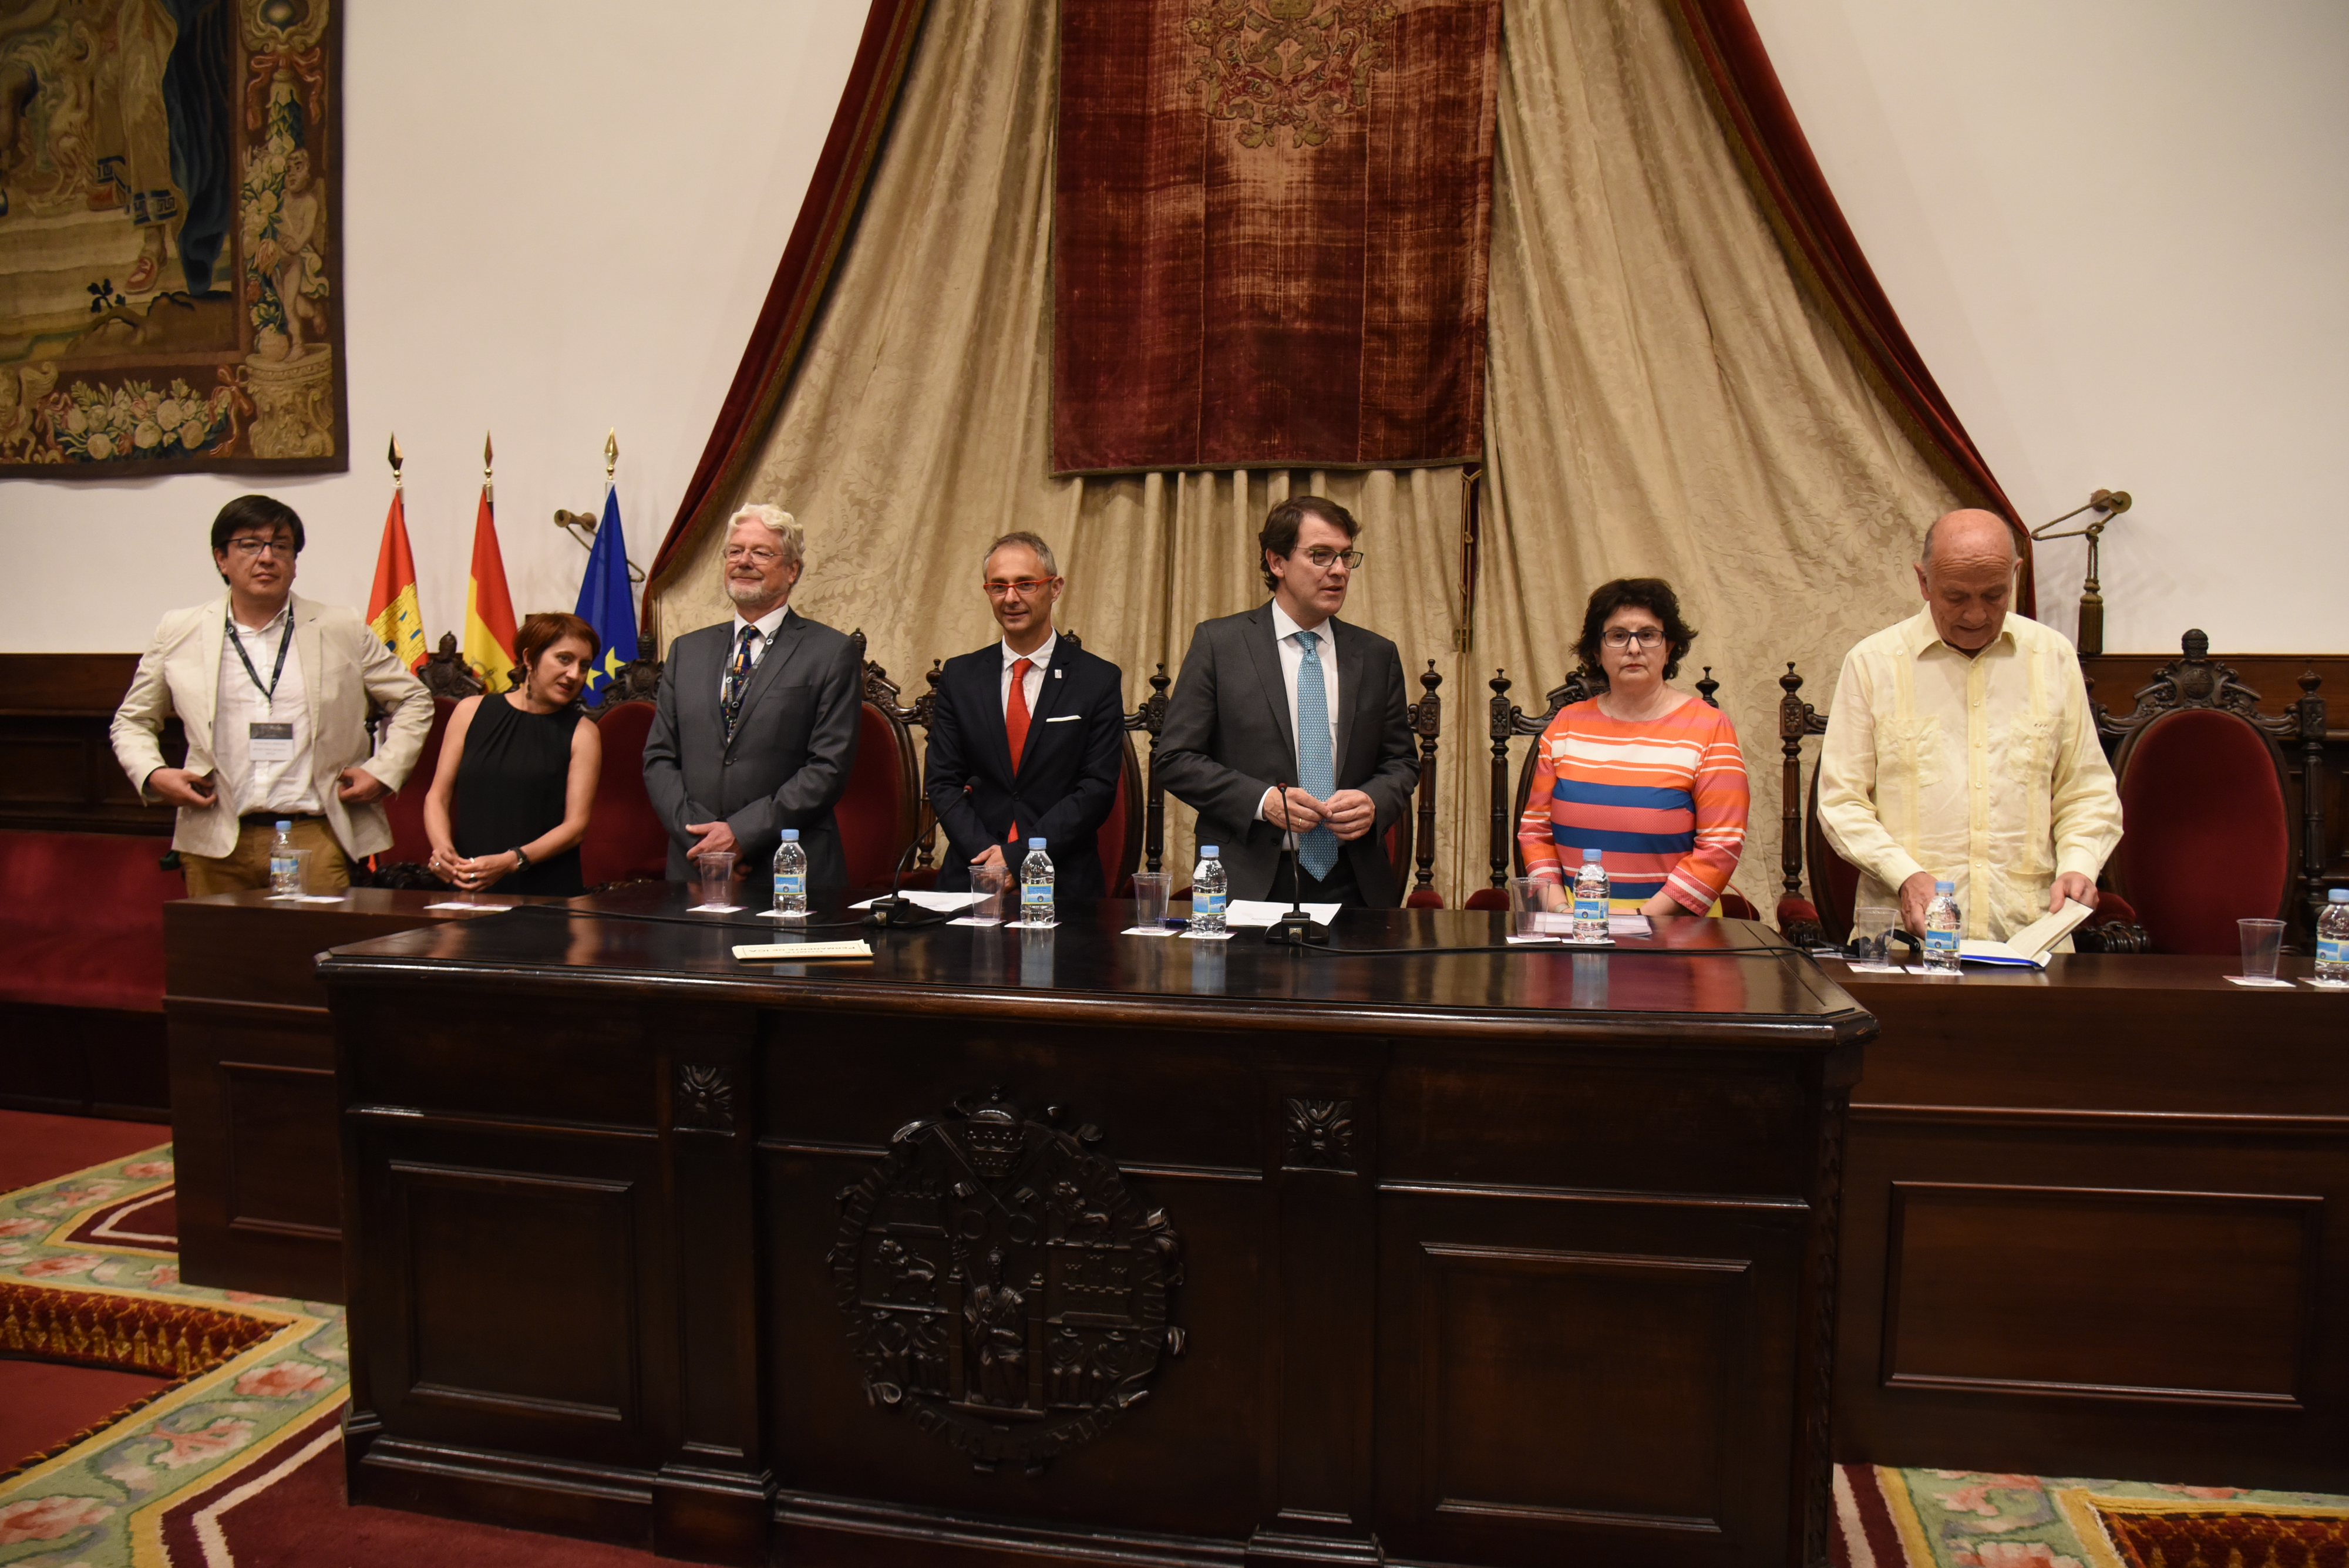 El rector apela al vínculo entre América Latina y la Universidad de Salamanca, “donde se defiende la democracia y los derechos”, al inaugurar el Congreso ICA 